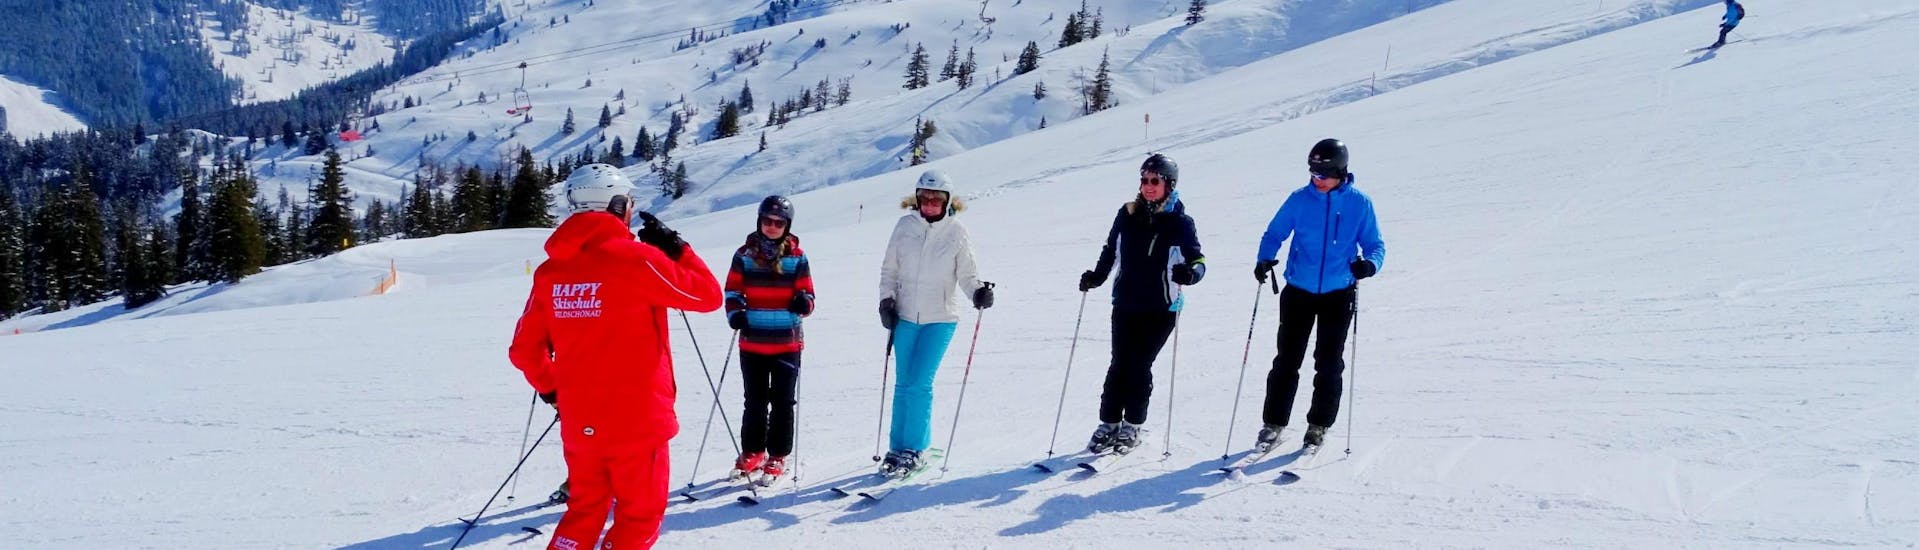 Clases de esquí para adultos para debutantes.